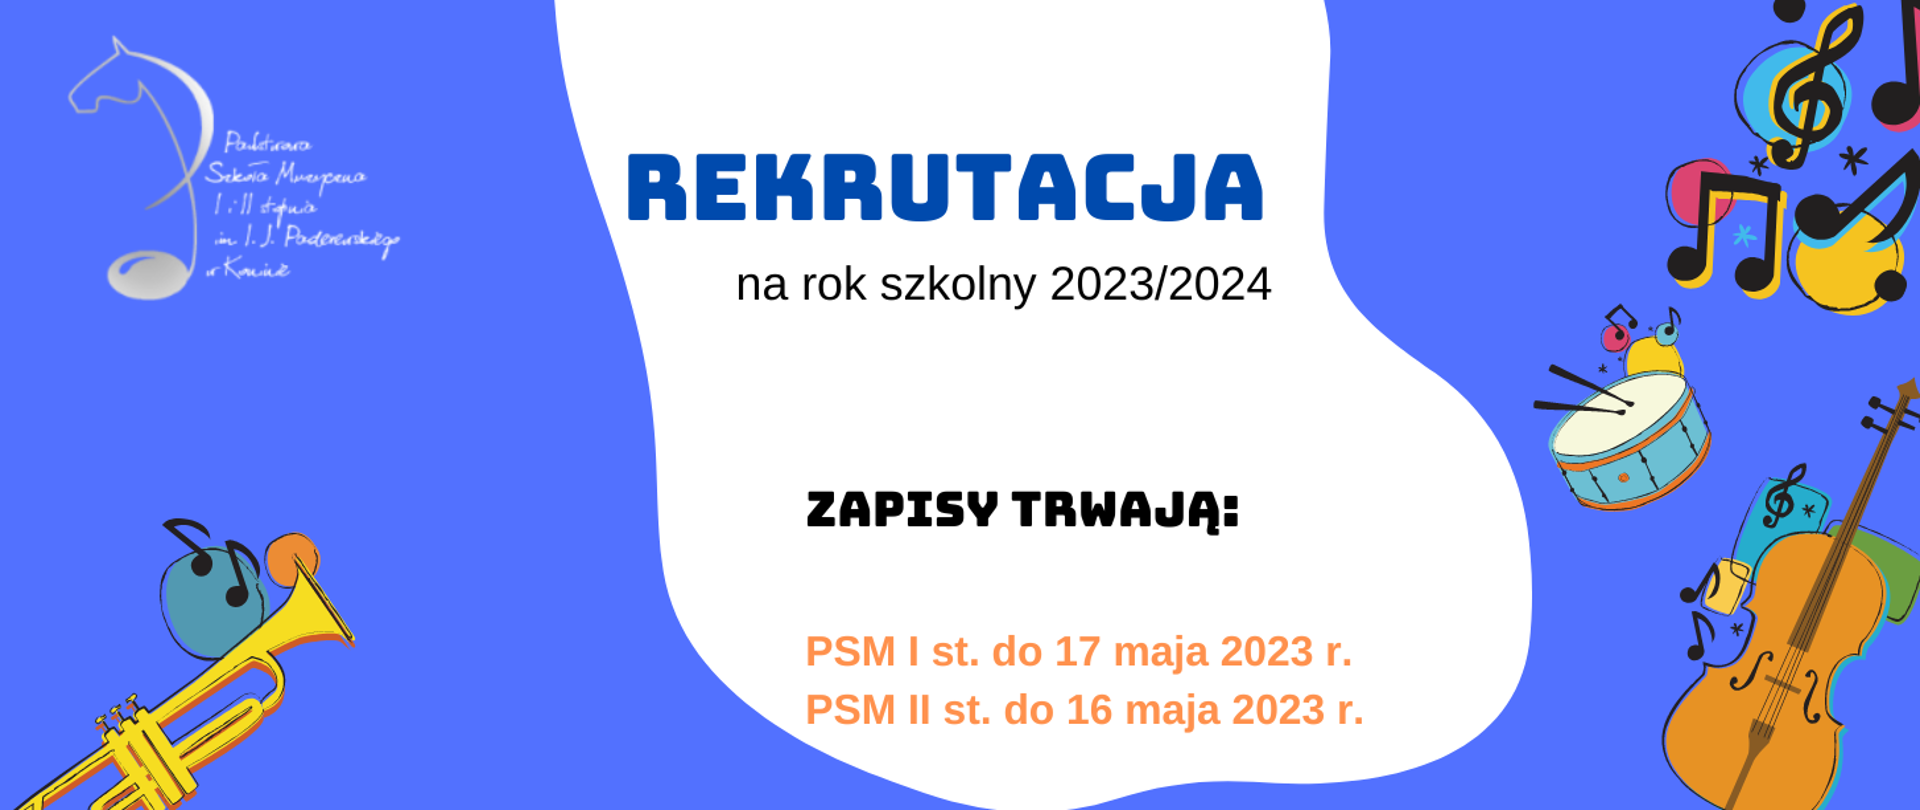 Plakat rekrutacji 2023/2024. Na niebieskim tle kolorowe instrumenty, pośrodku biały pas z informacjami zapisy trwają PSM I st do 17 maja 2023 PSM II st. do 16 maja 2023 r.